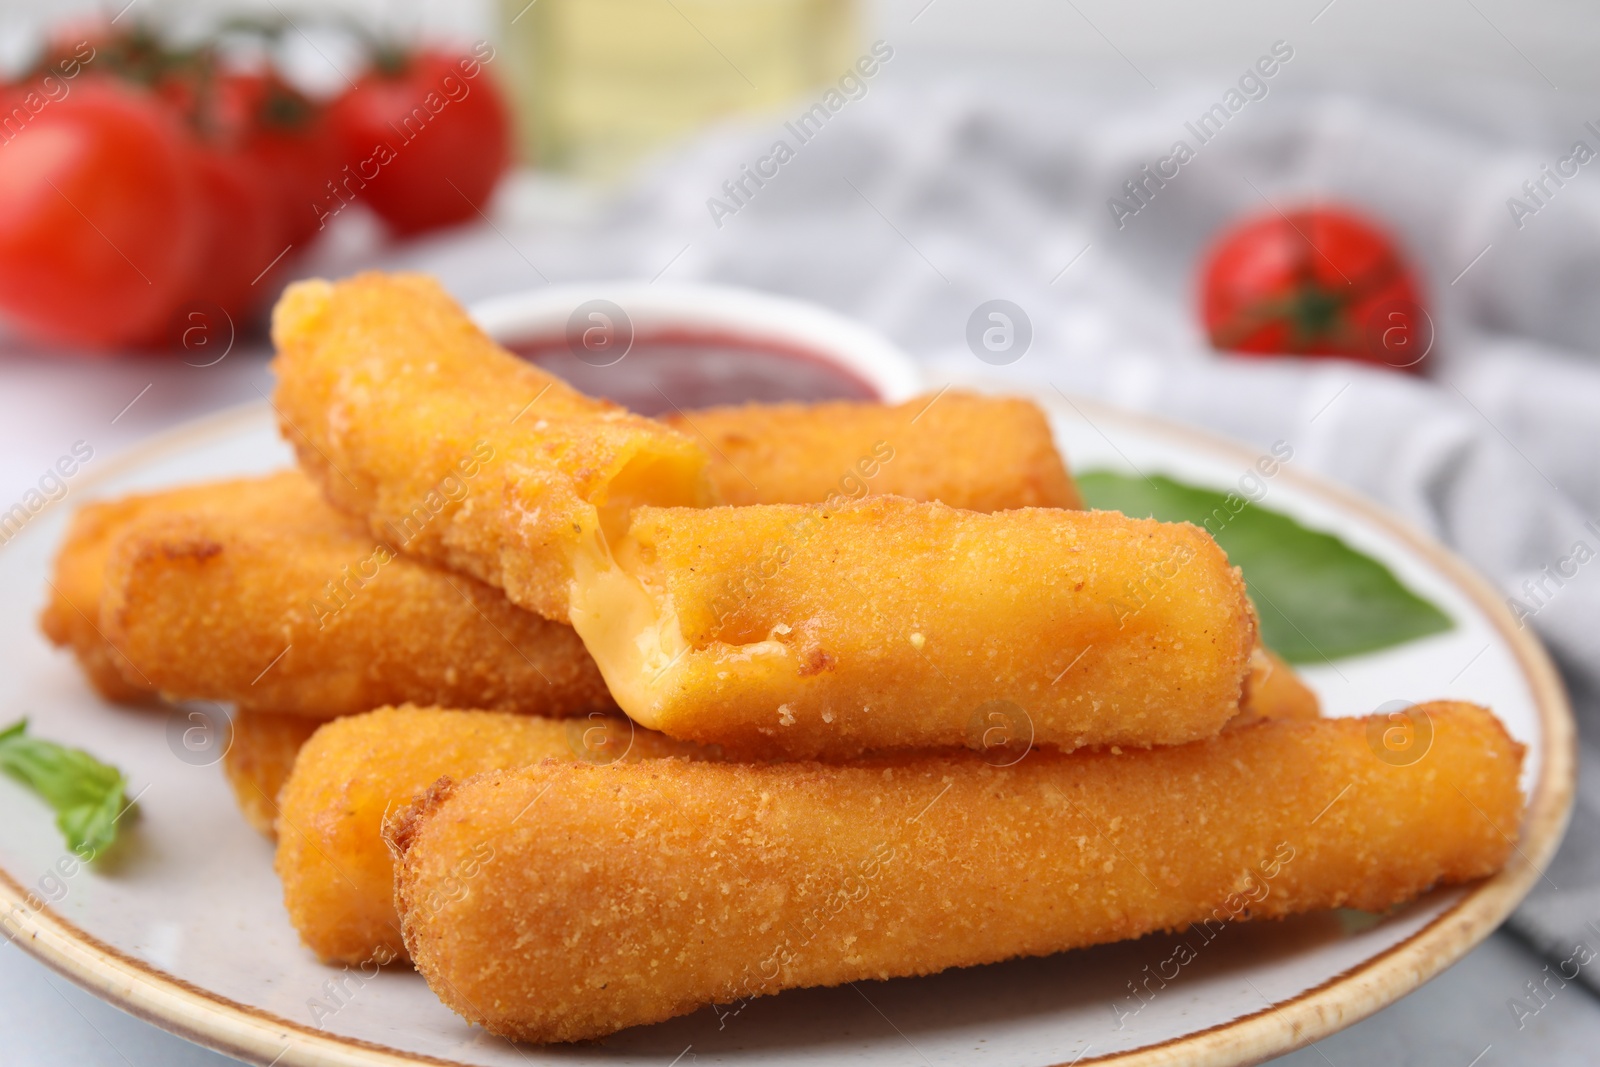 Photo of Tasty fried mozzarella sticks on white table, closeup